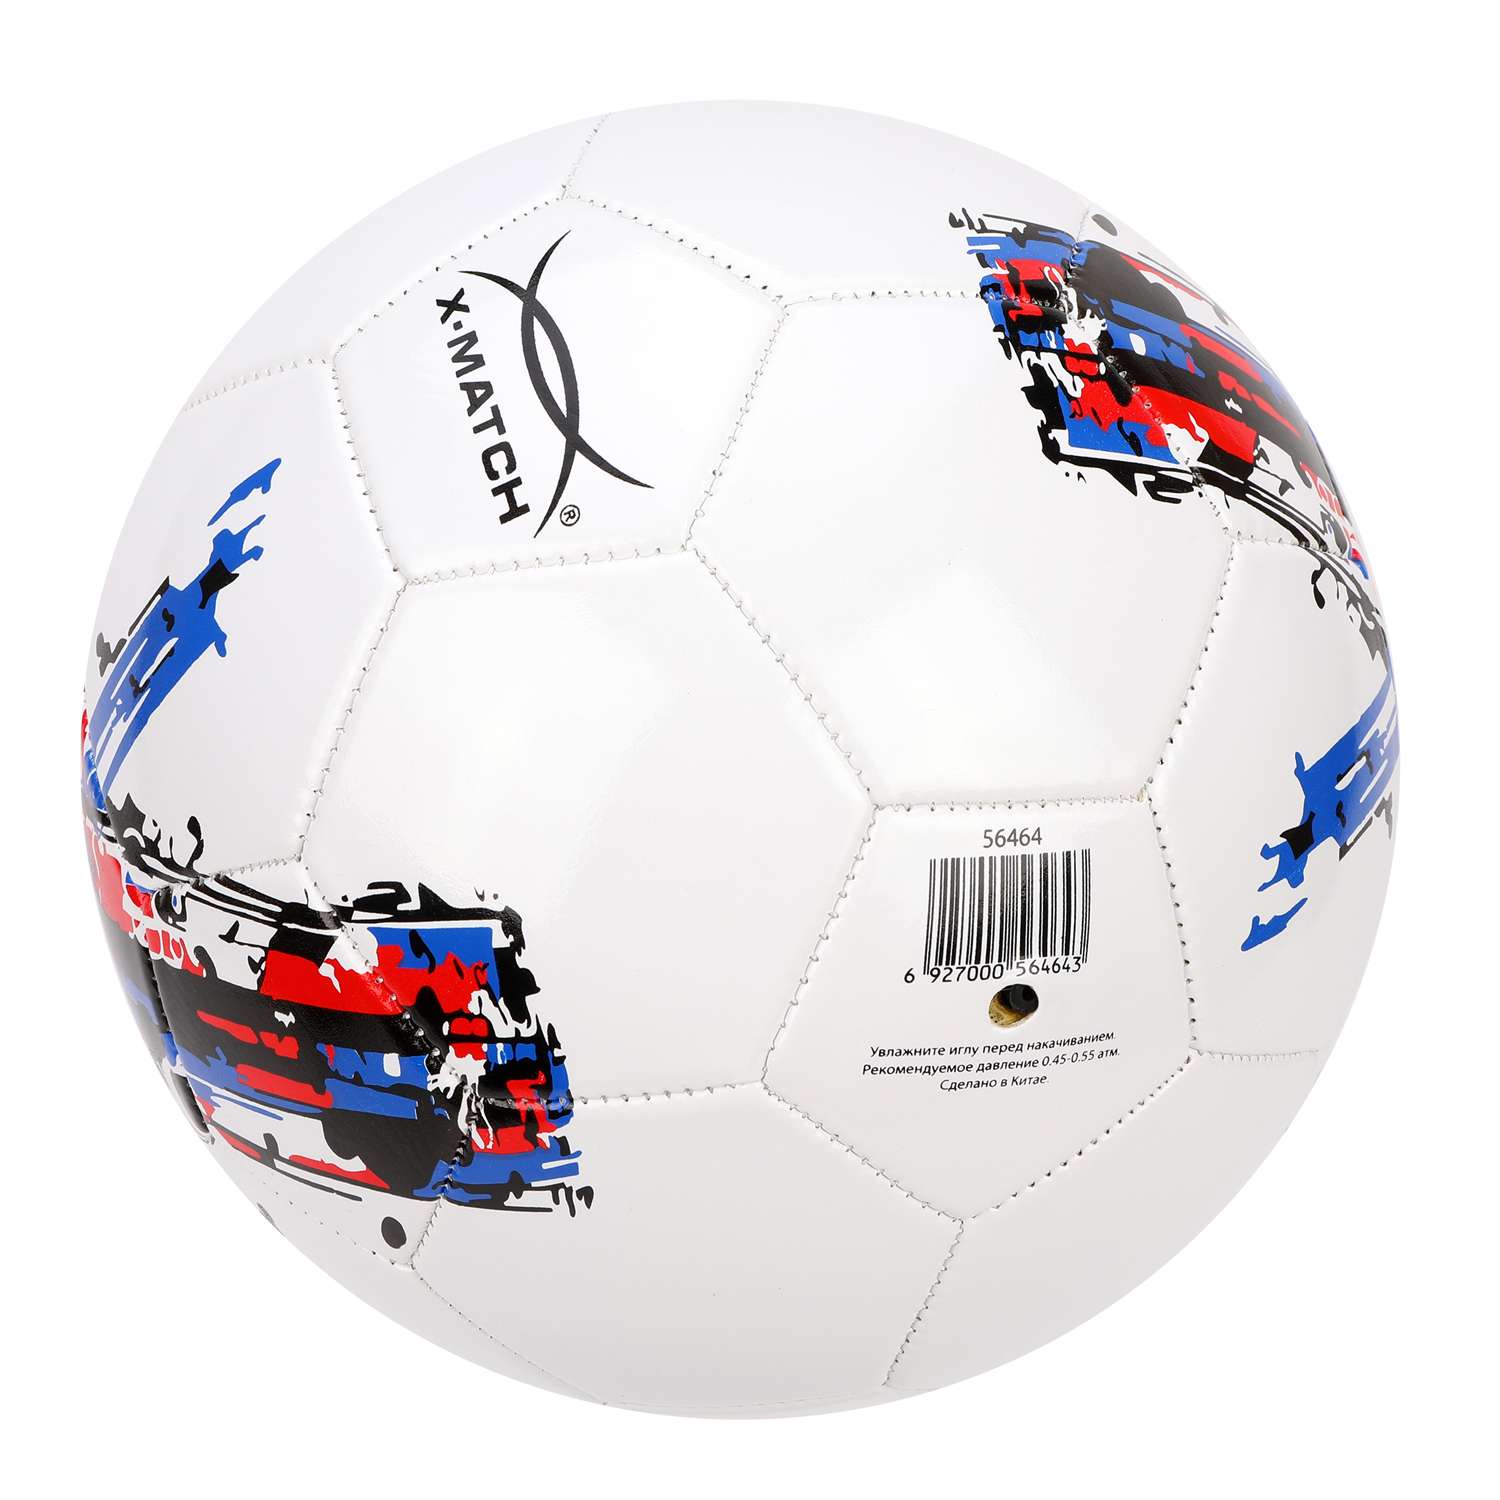 Мяч X-Match футбольный размер 5 слой 1 - фото 2